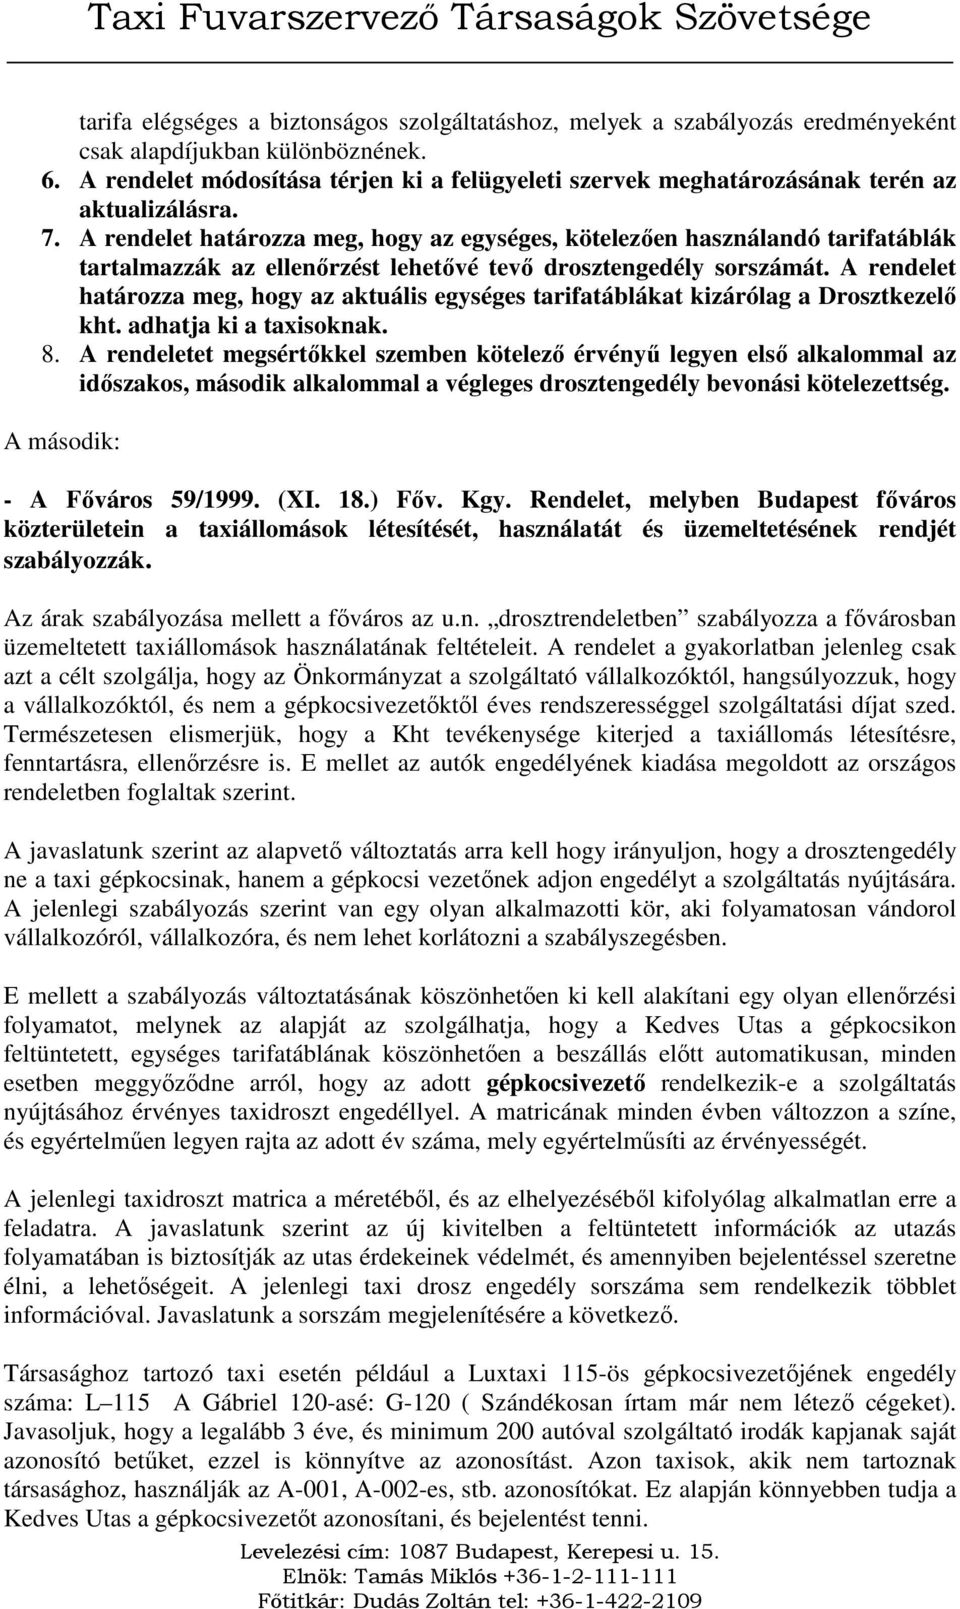 A rendelet határozza meg, hogy az egységes, kötelezıen használandó tarifatáblák tartalmazzák az ellenırzést lehetıvé tevı drosztengedély sorszámát.